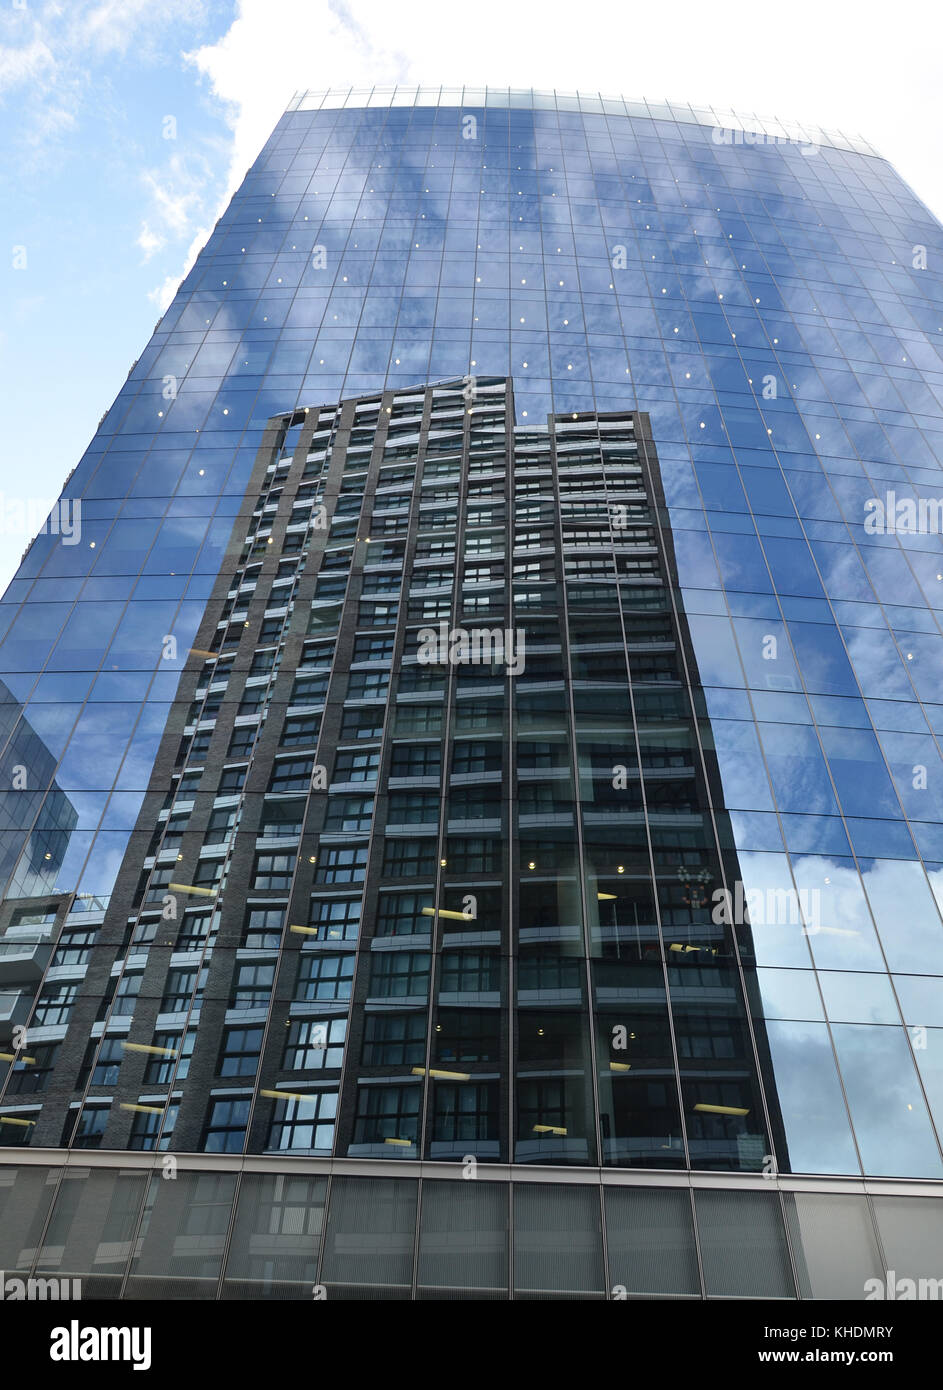 London Financial district skyline, des gratte-ciel et de grands immeubles de bureaux Banque D'Images